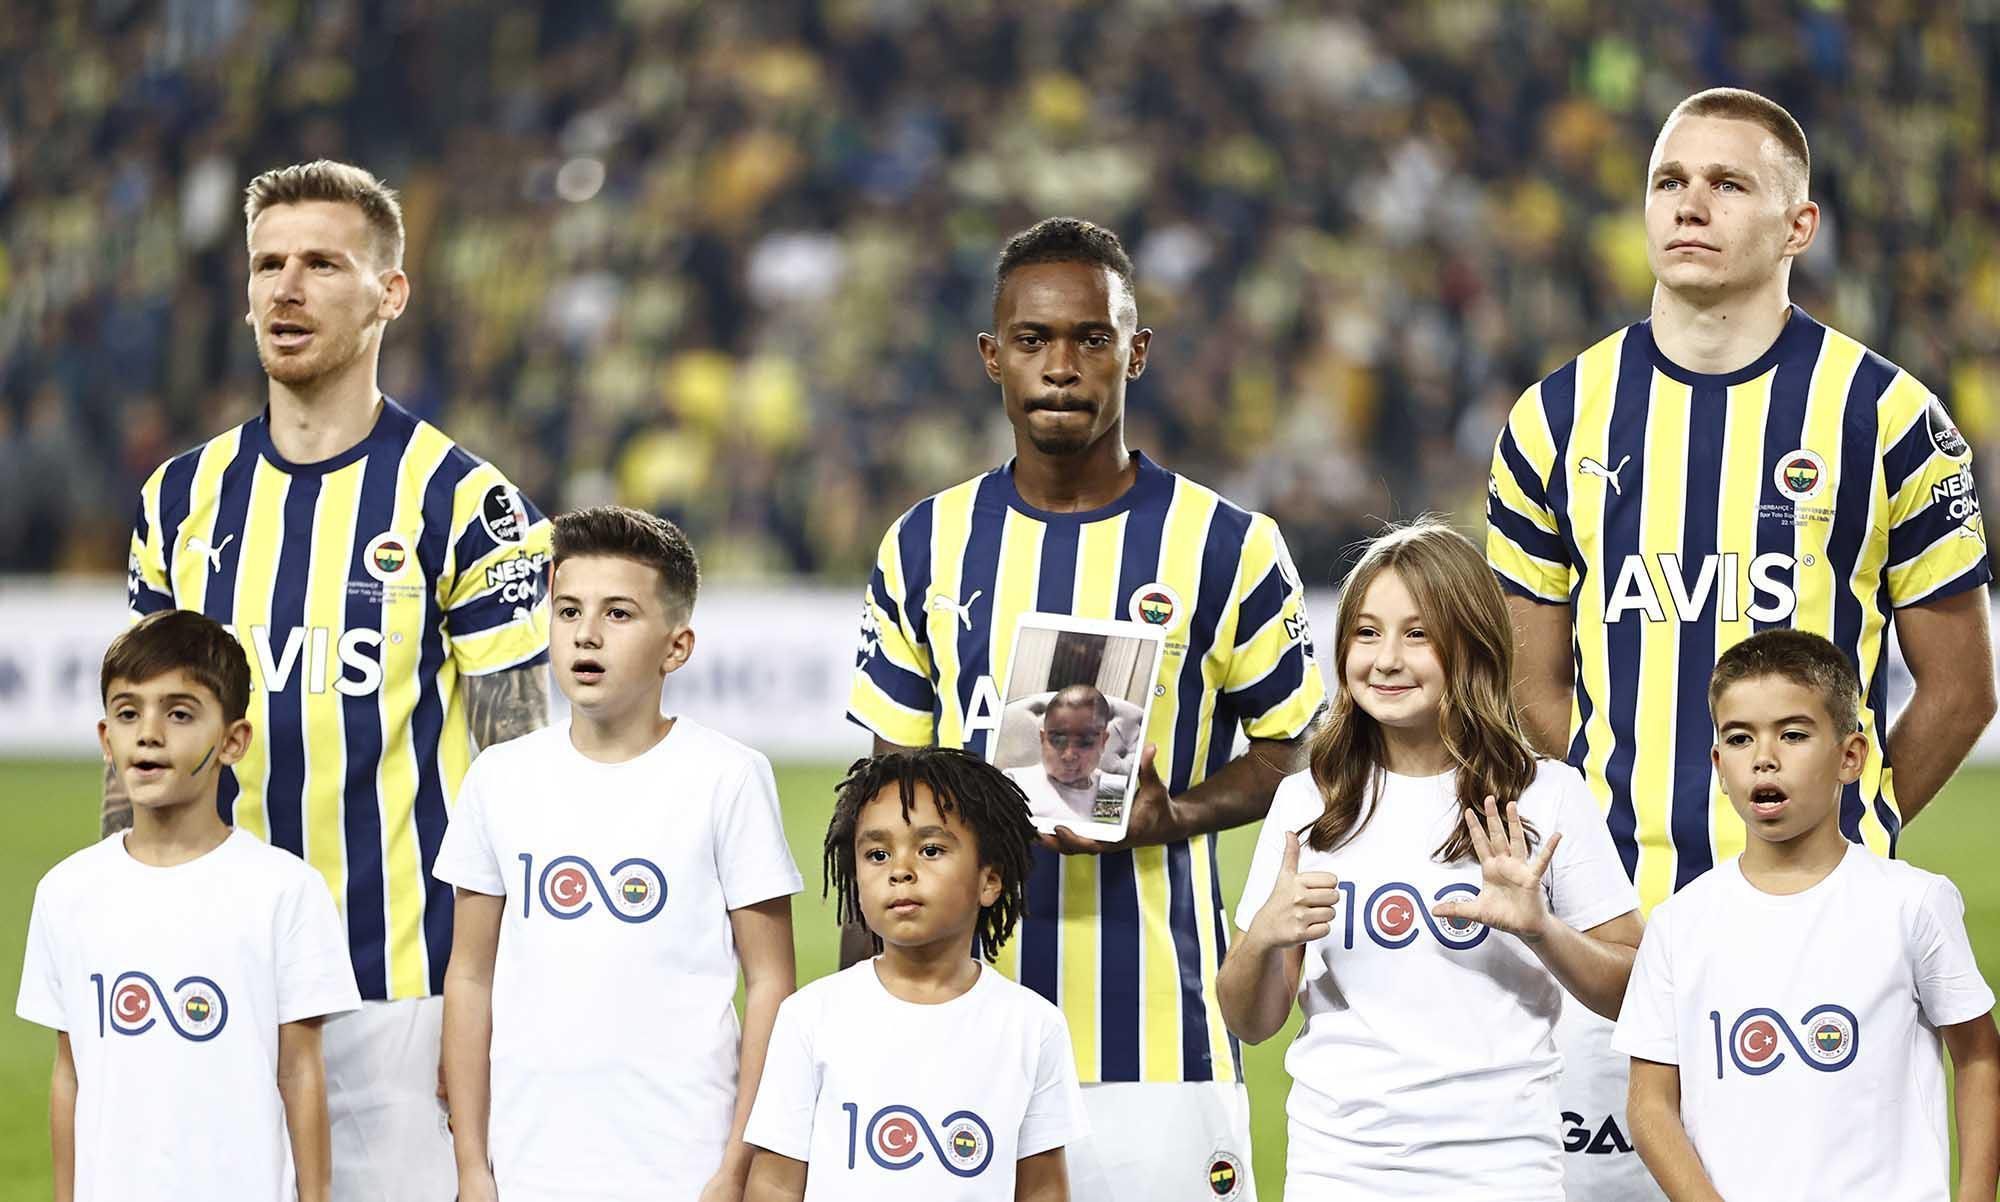 Fenerbahçe - Başakşehir maçında müthiş atmosfer